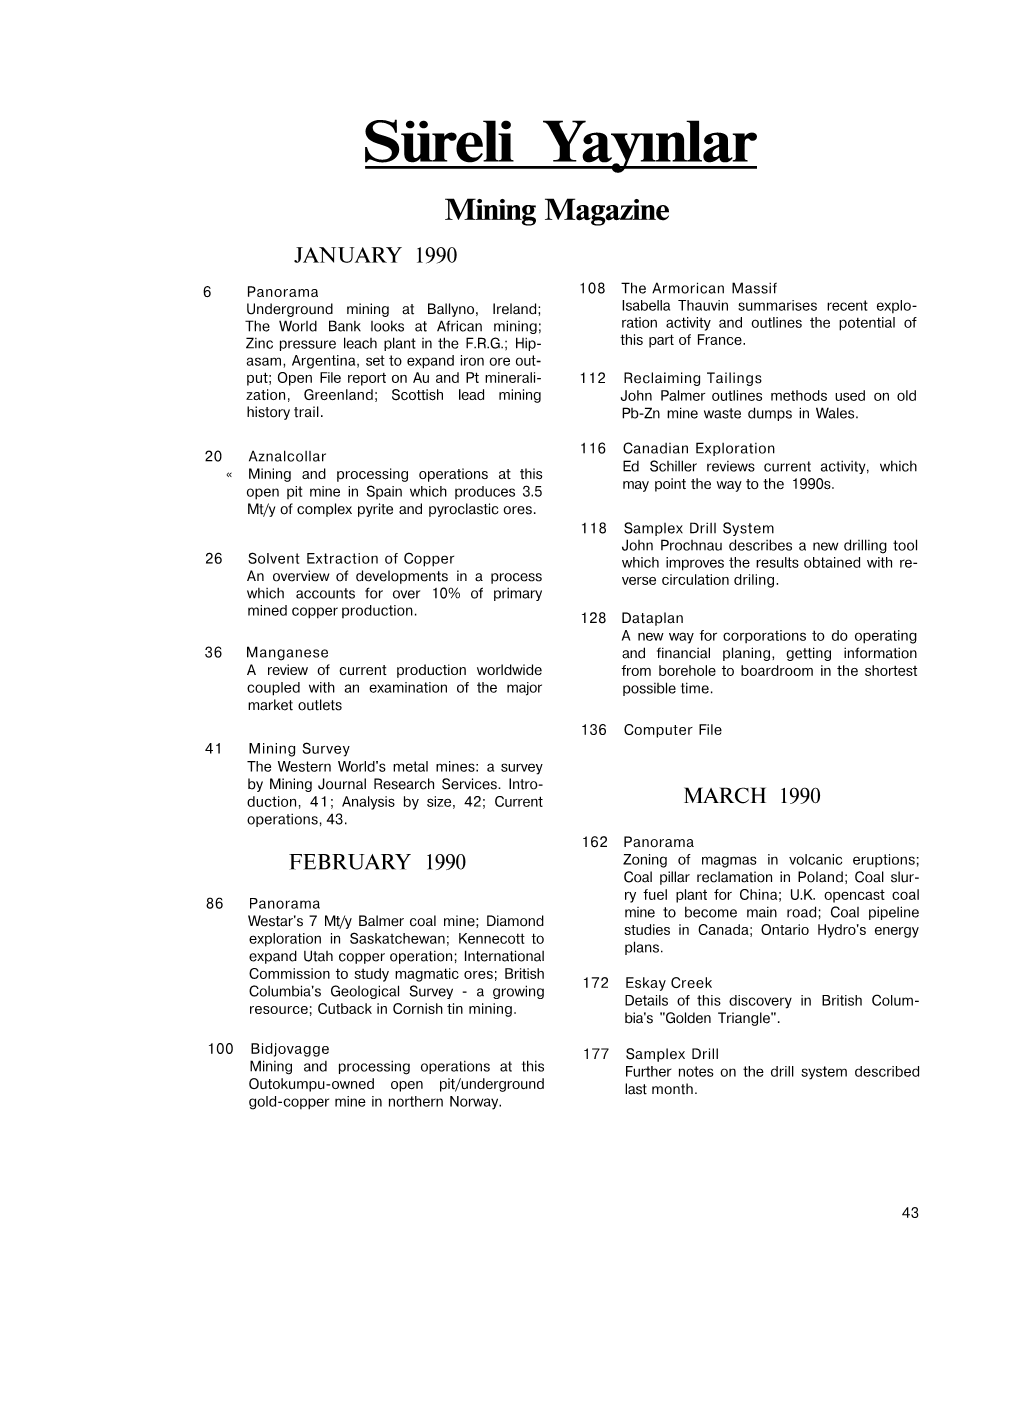 Süreli Yayınlar Mining Magazine JANUARY 1990